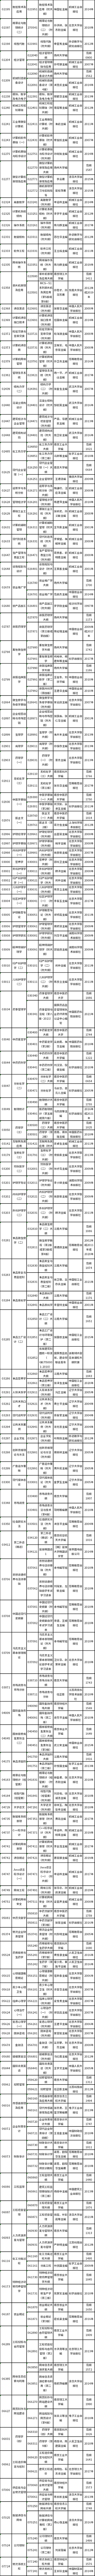 江苏省2023年4月高等教育自学考试开考课程教材计划表